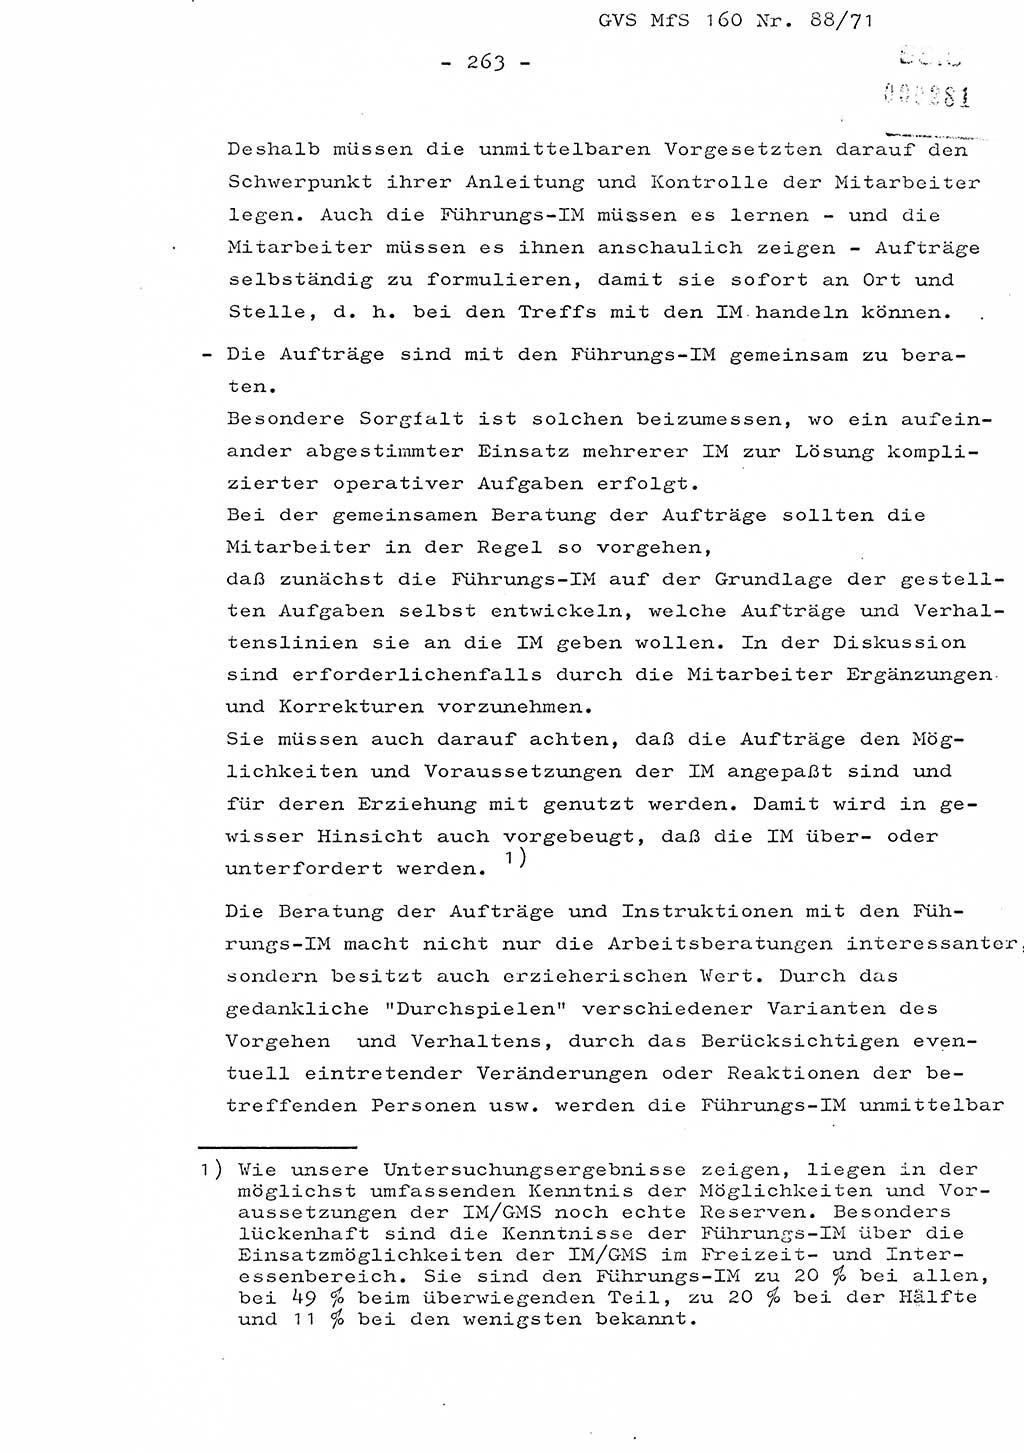 Dissertation Oberstleutnant Josef Schwarz (BV Schwerin), Major Fritz Amm (JHS), Hauptmann Peter Gräßler (JHS), Ministerium für Staatssicherheit (MfS) [Deutsche Demokratische Republik (DDR)], Juristische Hochschule (JHS), Geheime Verschlußsache (GVS) 160-88/71, Potsdam 1972, Seite 263 (Diss. MfS DDR JHS GVS 160-88/71 1972, S. 263)